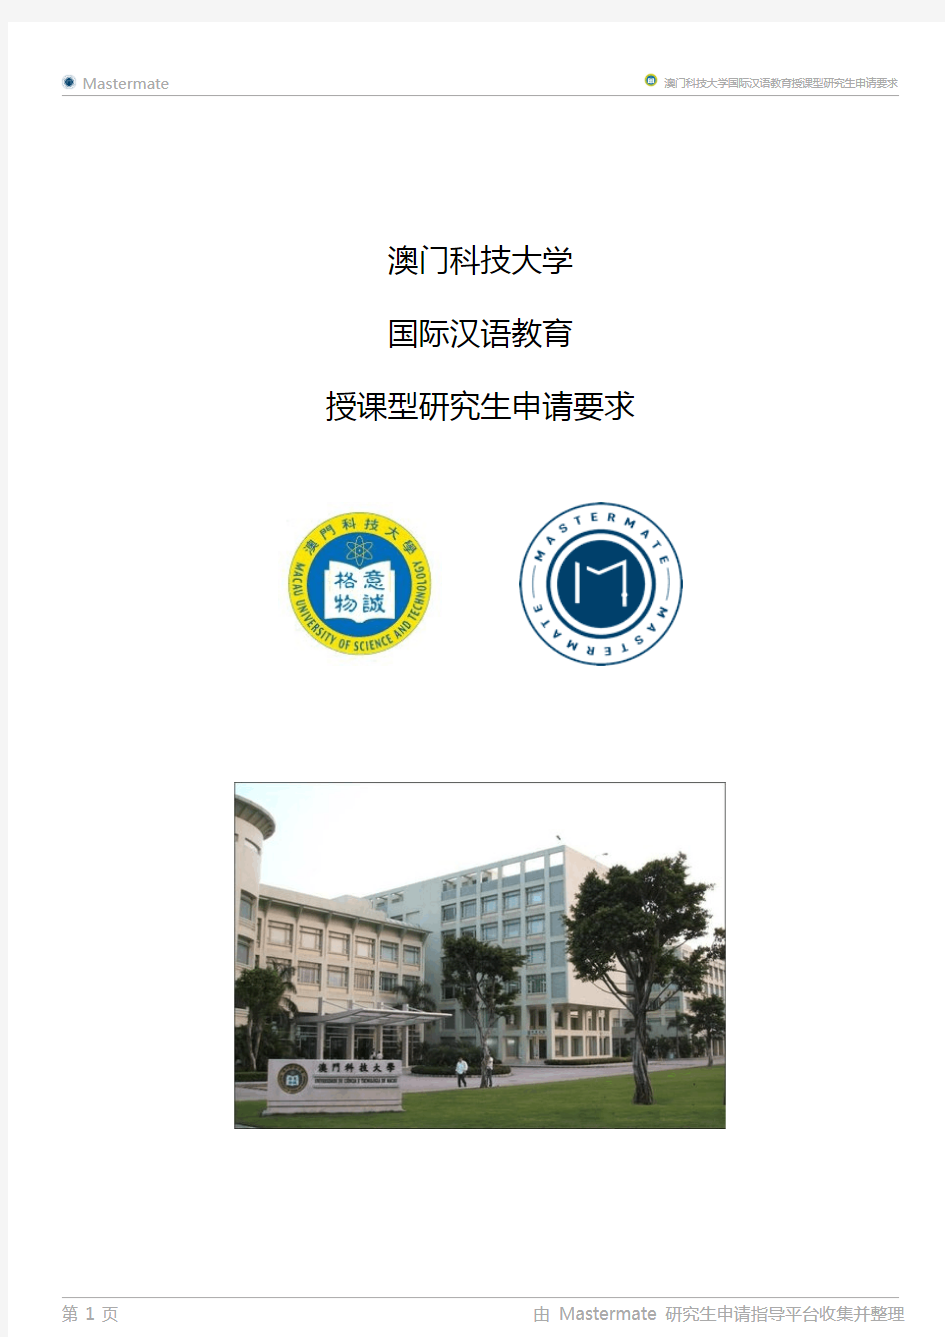 澳门科技大学国际汉语教育授课型研究生申请要求